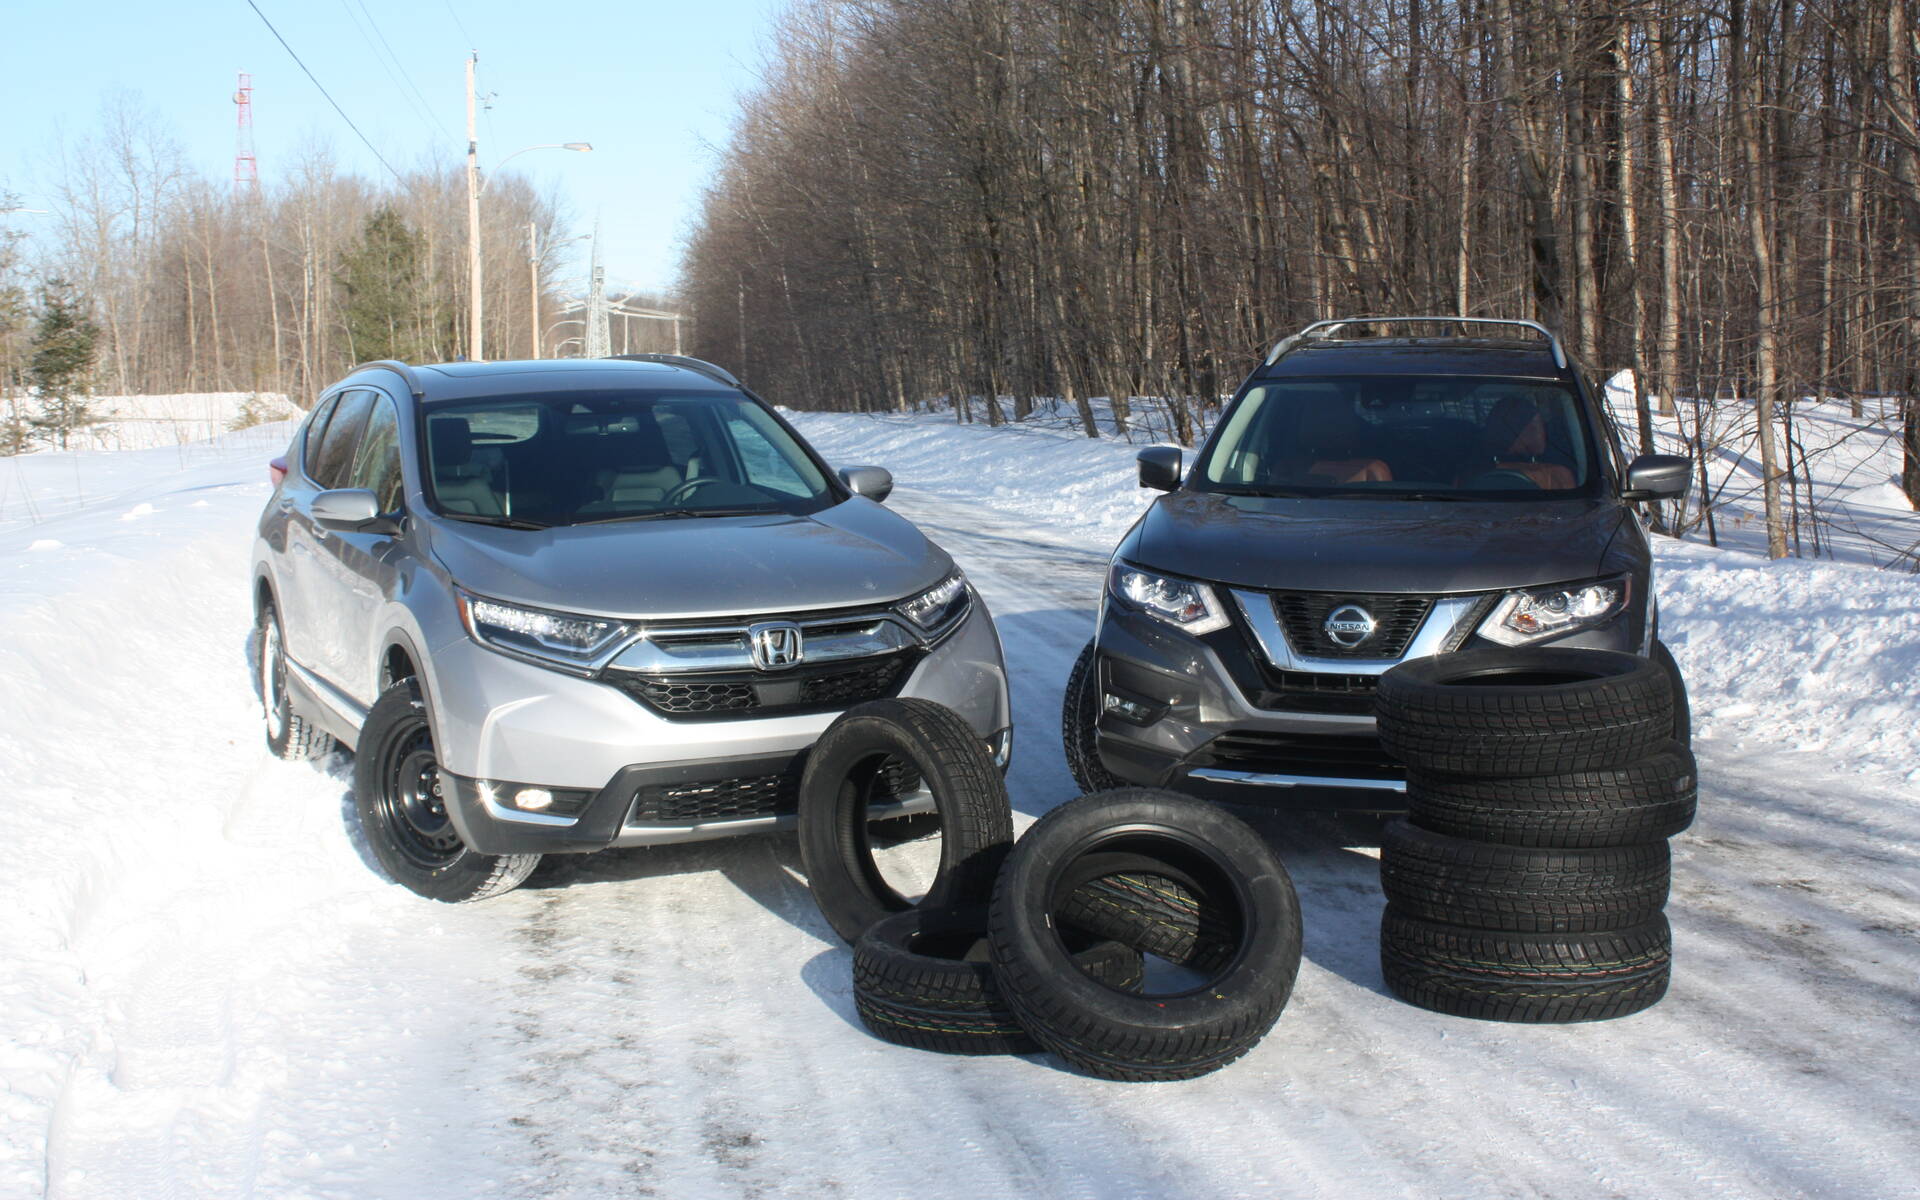 Set of 4 - 185/55/R15 Bridgestone Blizzak Winter Tires - auto wheels &  tires - by owner - vehicle automotive sale 